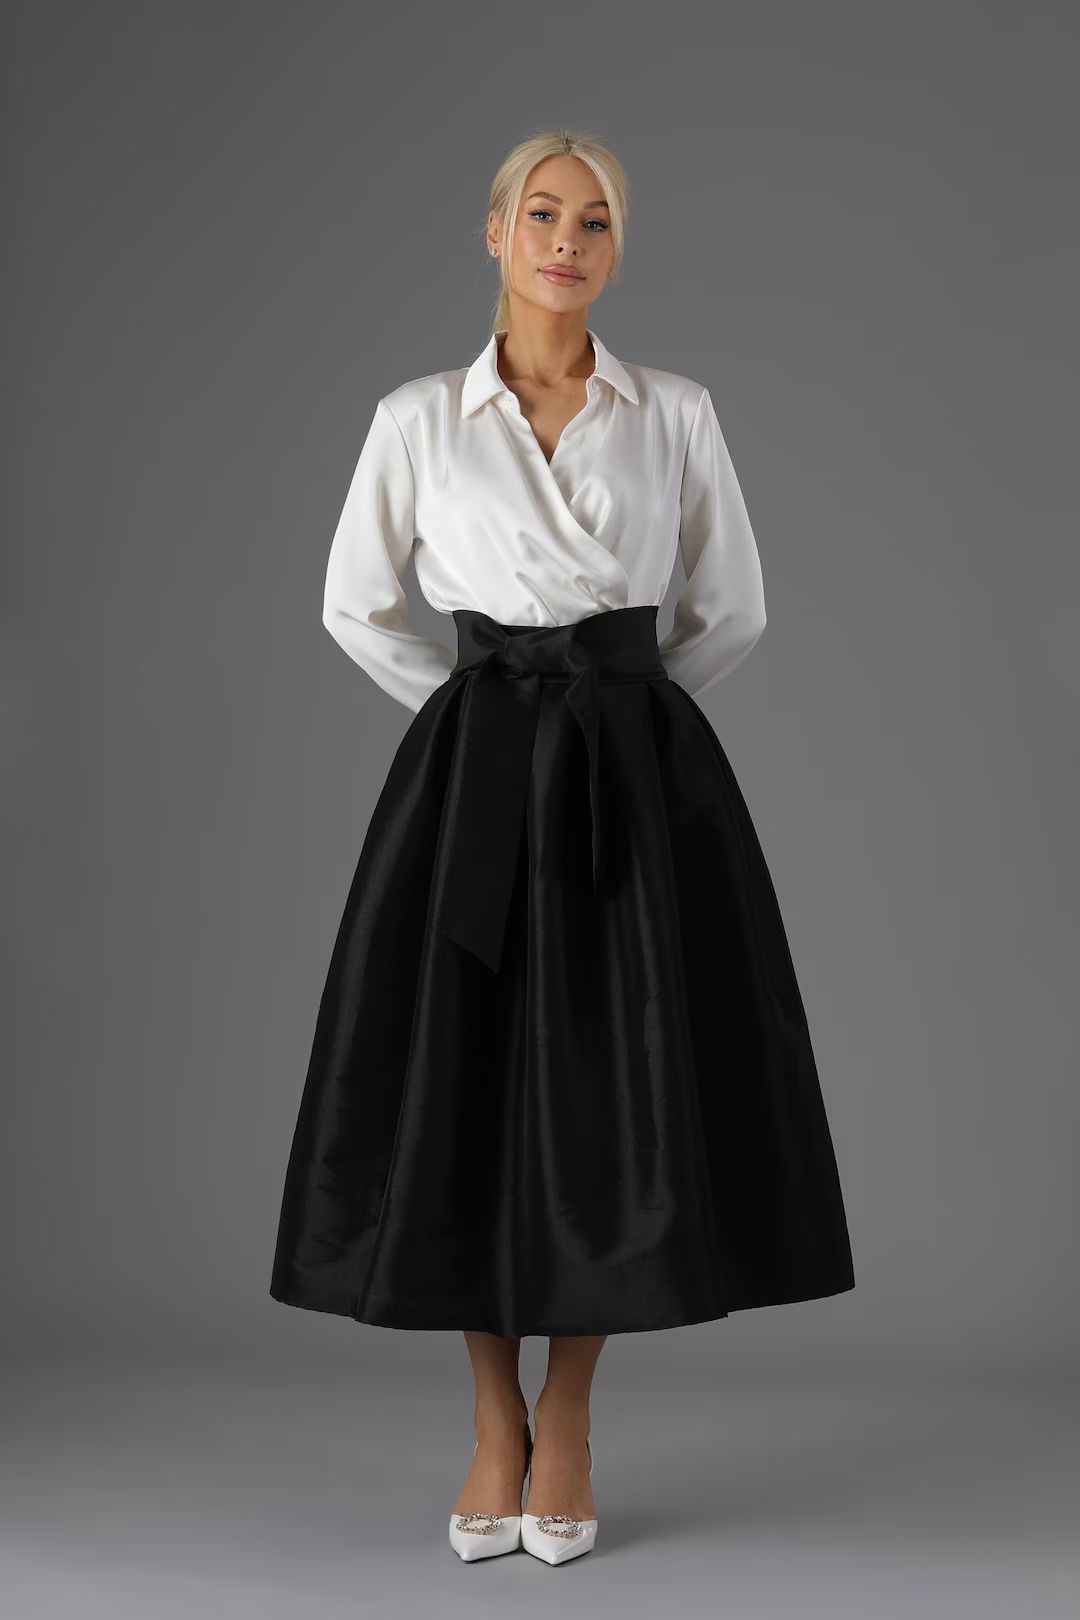 Black Taffeta Skirt With Pockets Skirt for Women Classic Skirt Ball Gown Skirt Formal Skirt Weddi... | Etsy (US)